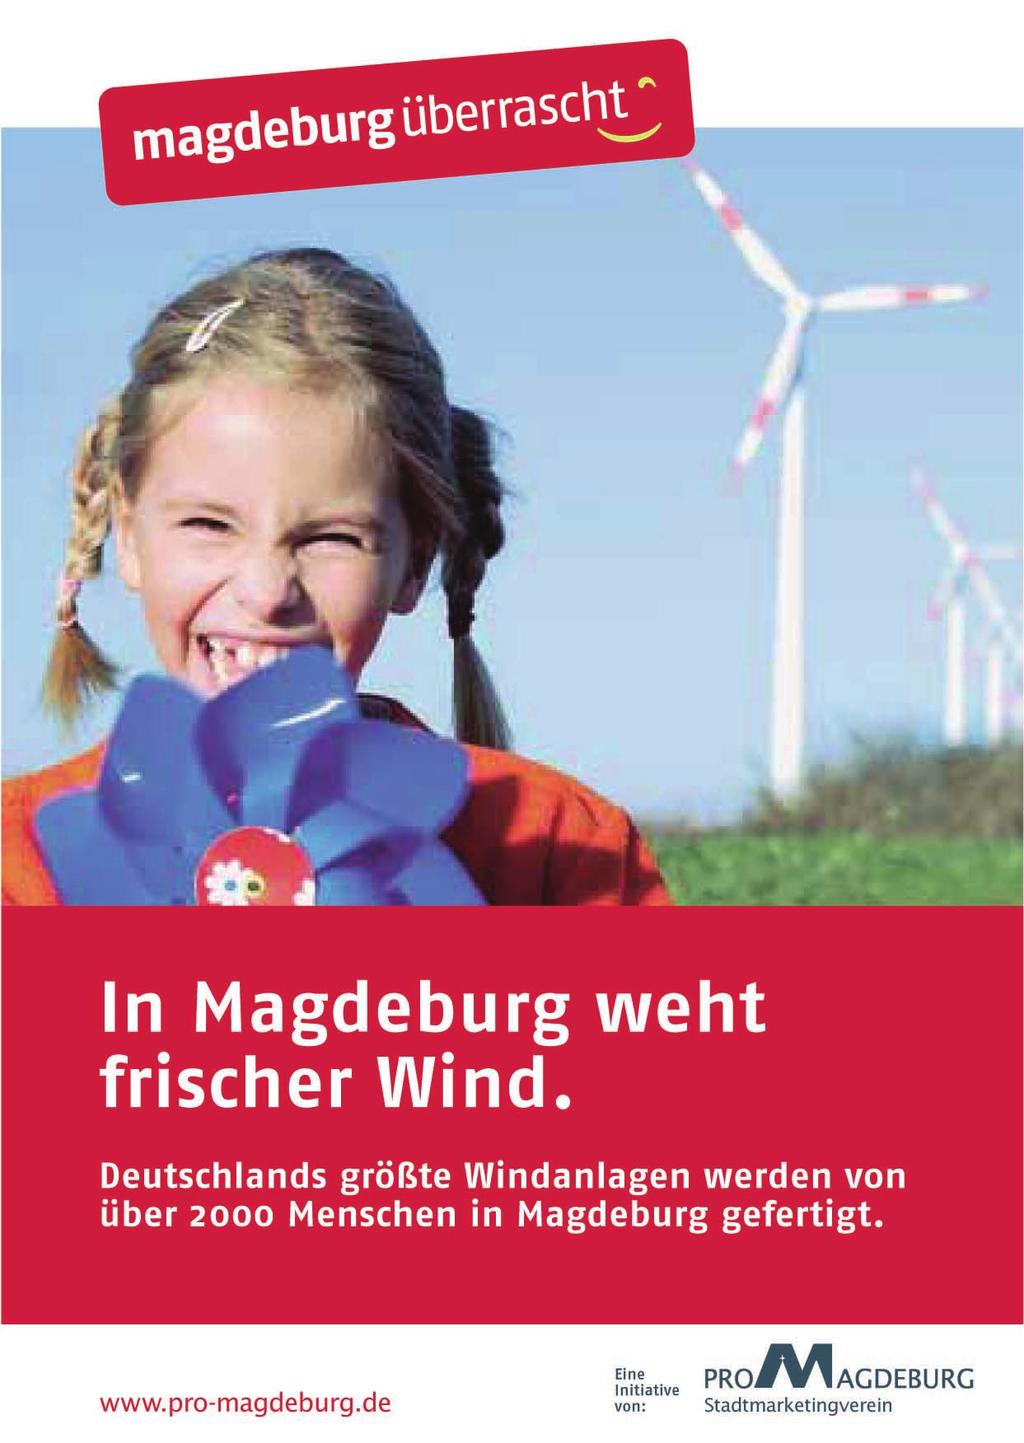 16 PRO MAGDEBURG >>> KAMPAGNEN Magdeburg überrascht startete 2006 Magdeburg überrascht, so lautet die Einschätzung fast jedes Besuchers unserer Stadt, der noch nie